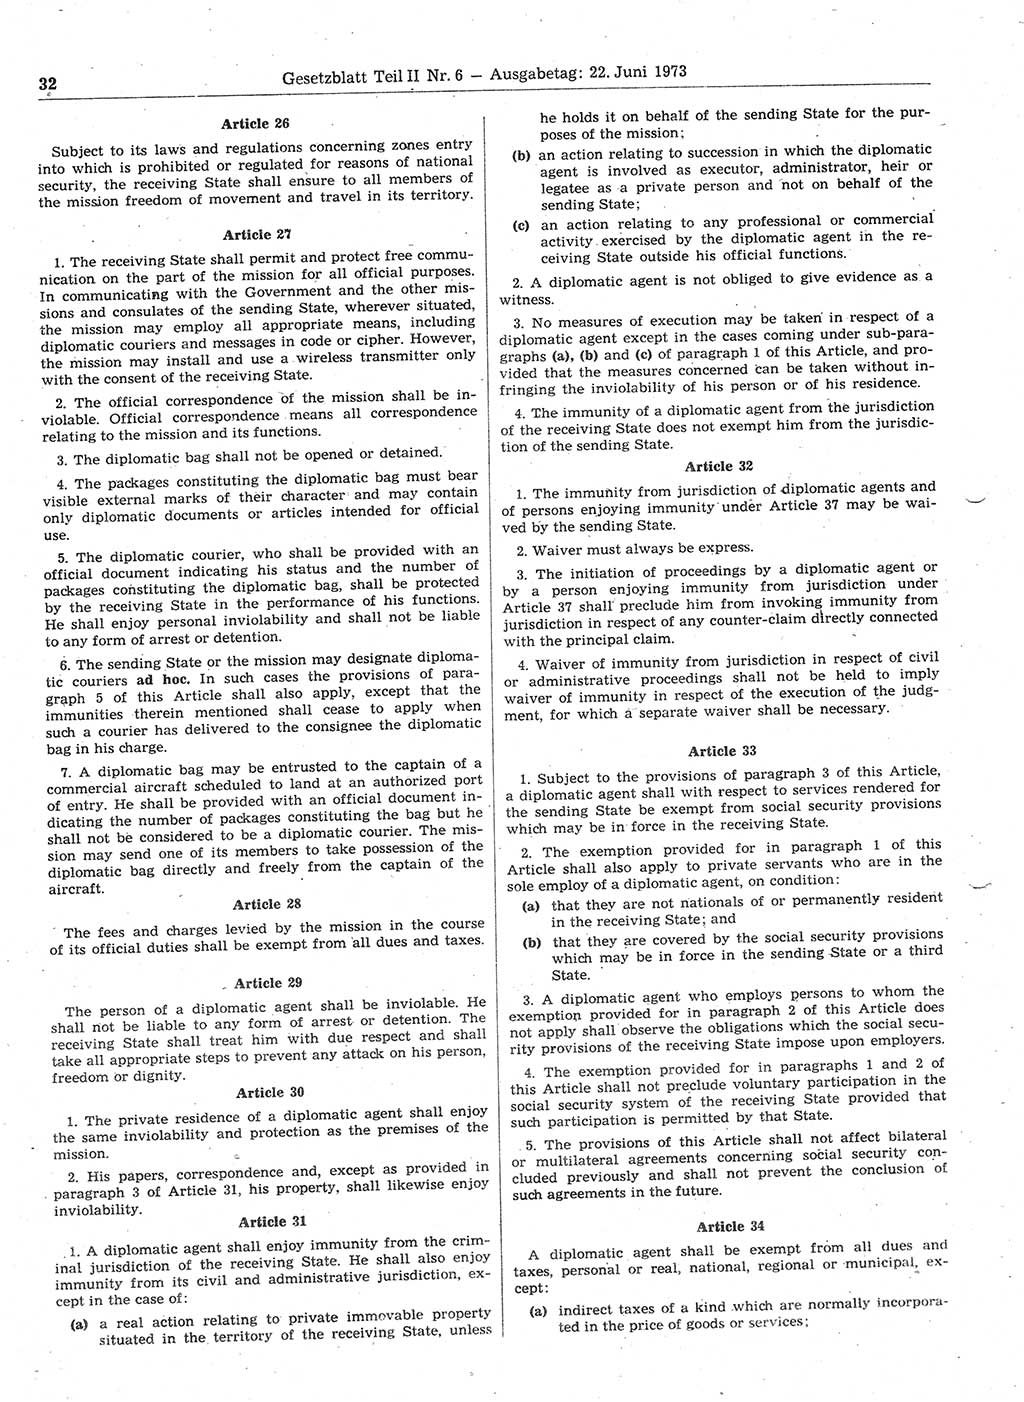 Gesetzblatt (GBl.) der Deutschen Demokratischen Republik (DDR) Teil ⅠⅠ 1973, Seite 32 (GBl. DDR ⅠⅠ 1973, S. 32)